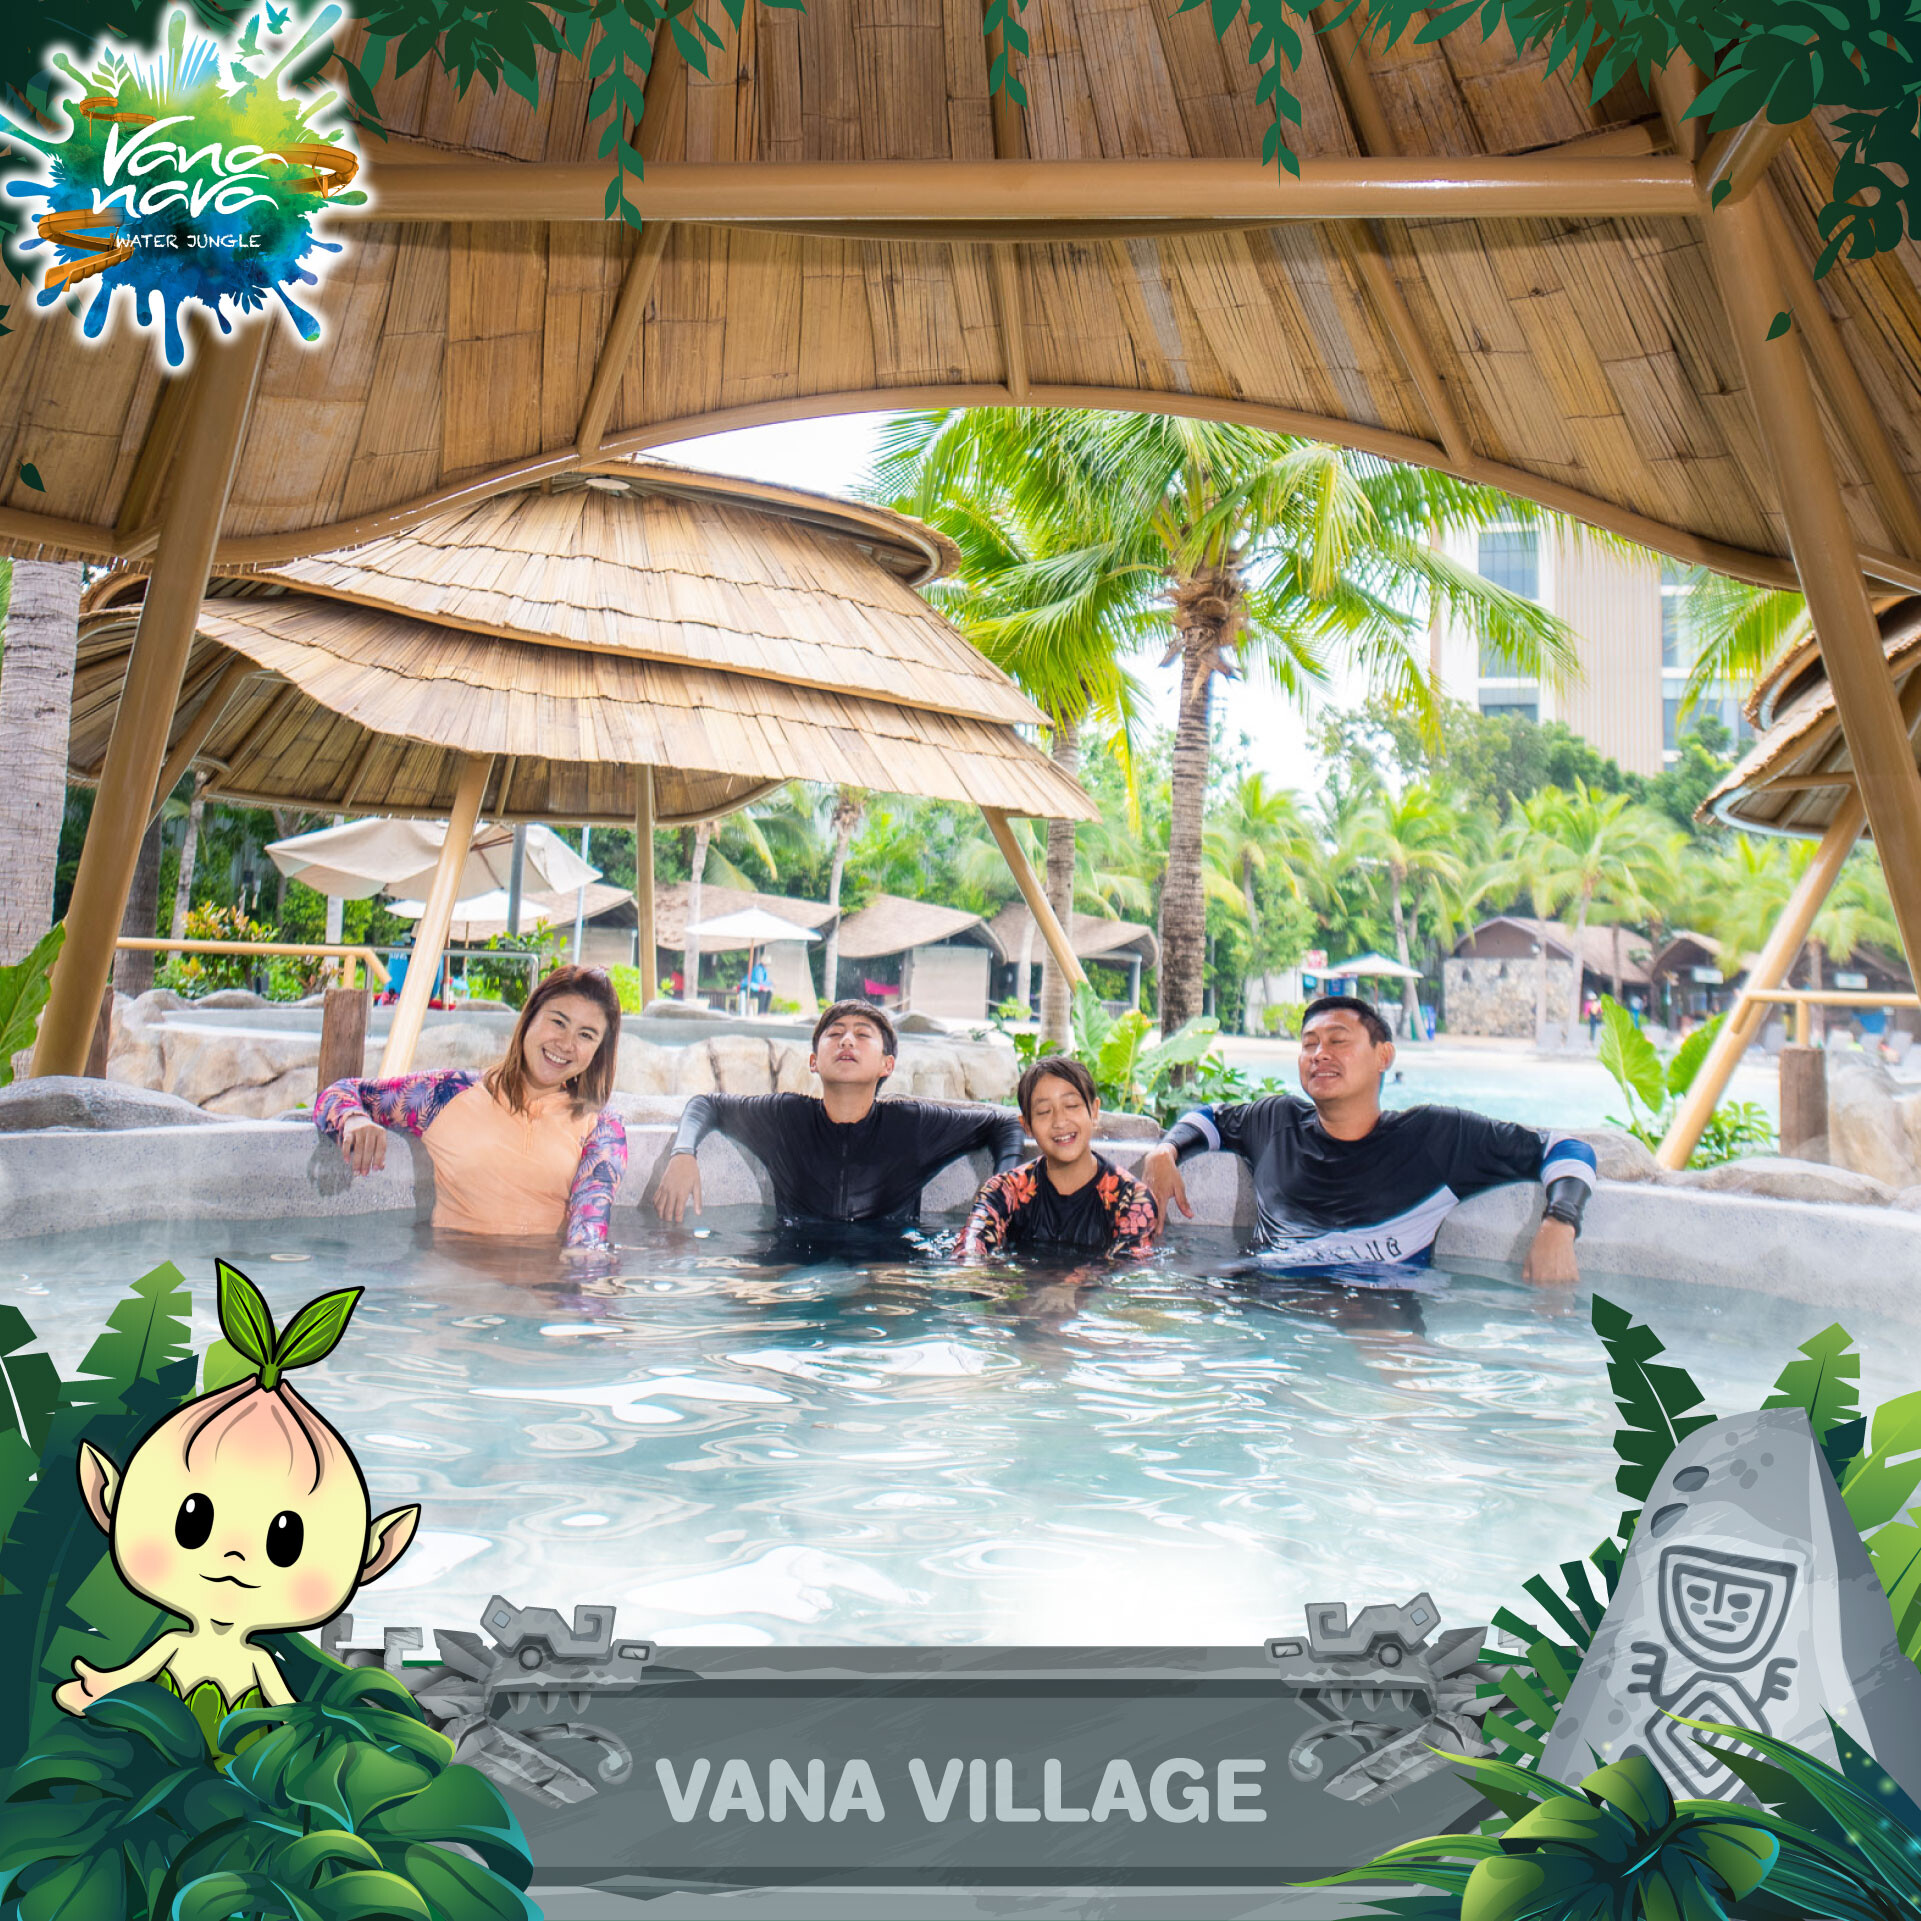 สวนน้ำวานา นาวา หัวหิน ฉลองเปิดโซนใหม่ VANA VILLAGE บ่อน้ำร้อน - น้ำเย็น ในสวนสนุกที่แรกที่เดียวในประเทศไทย